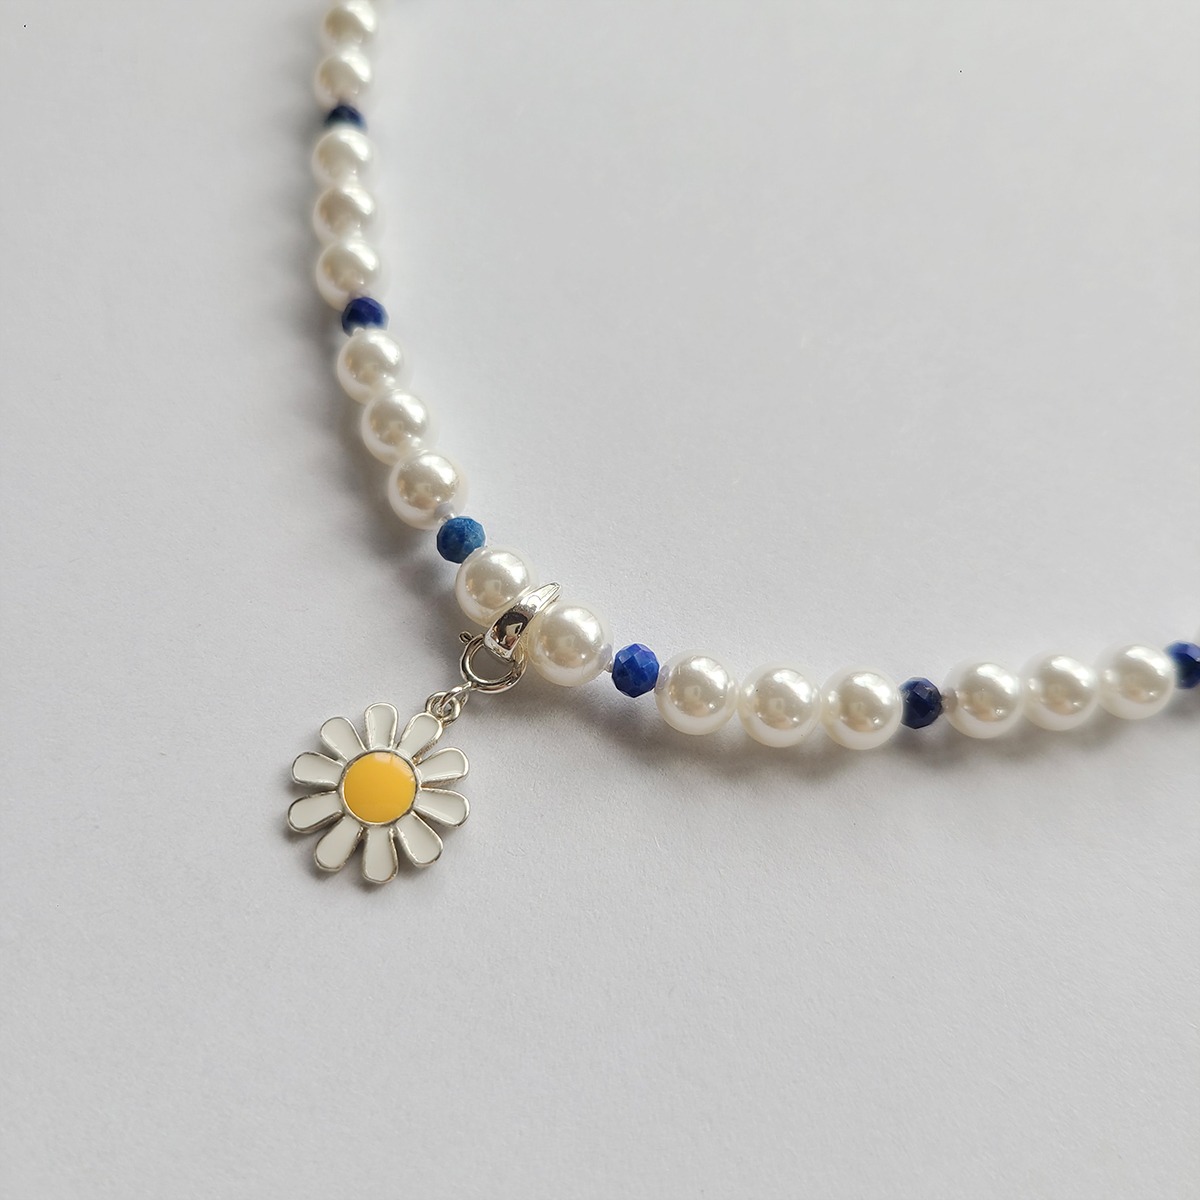 03. [daisy necklace]